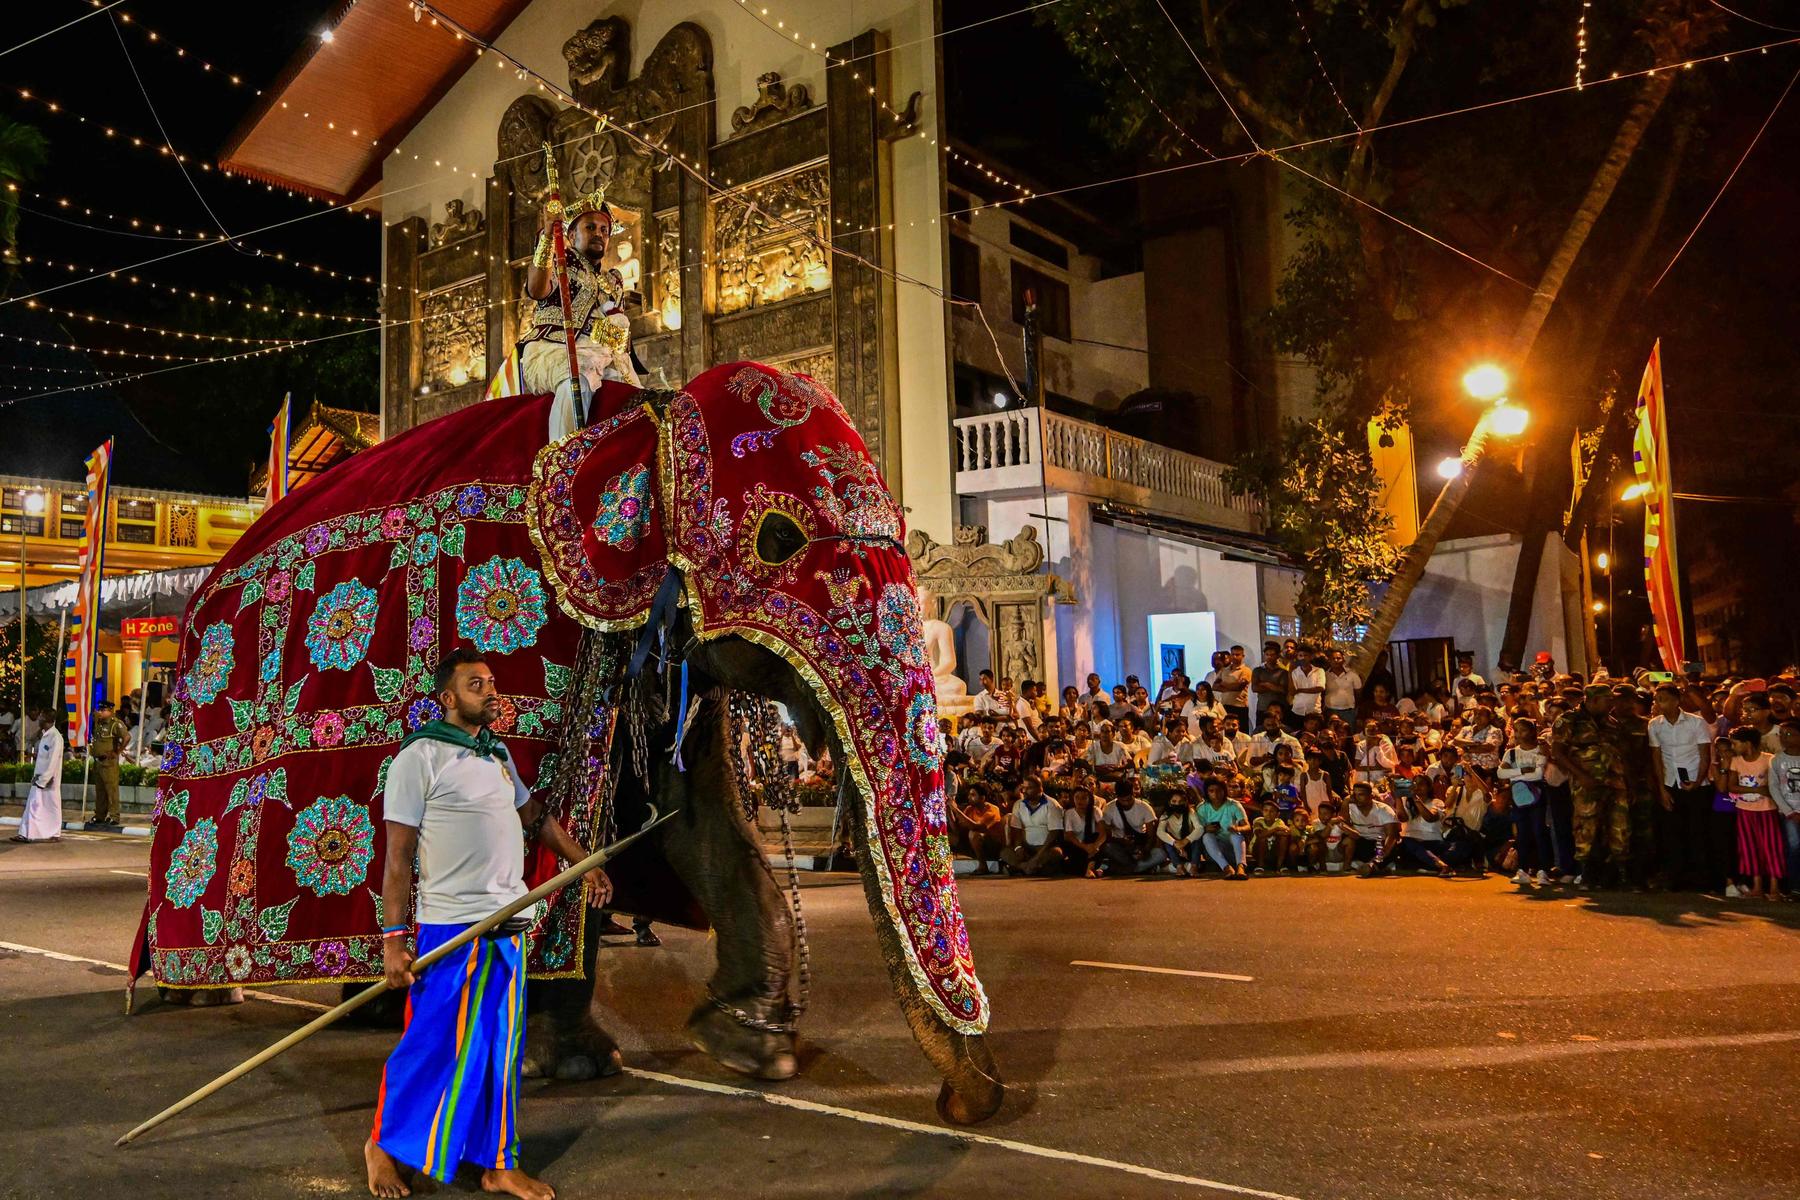 Elefant in Panik läift Amok und verletzt 13 Menschen in Sri Lanka 